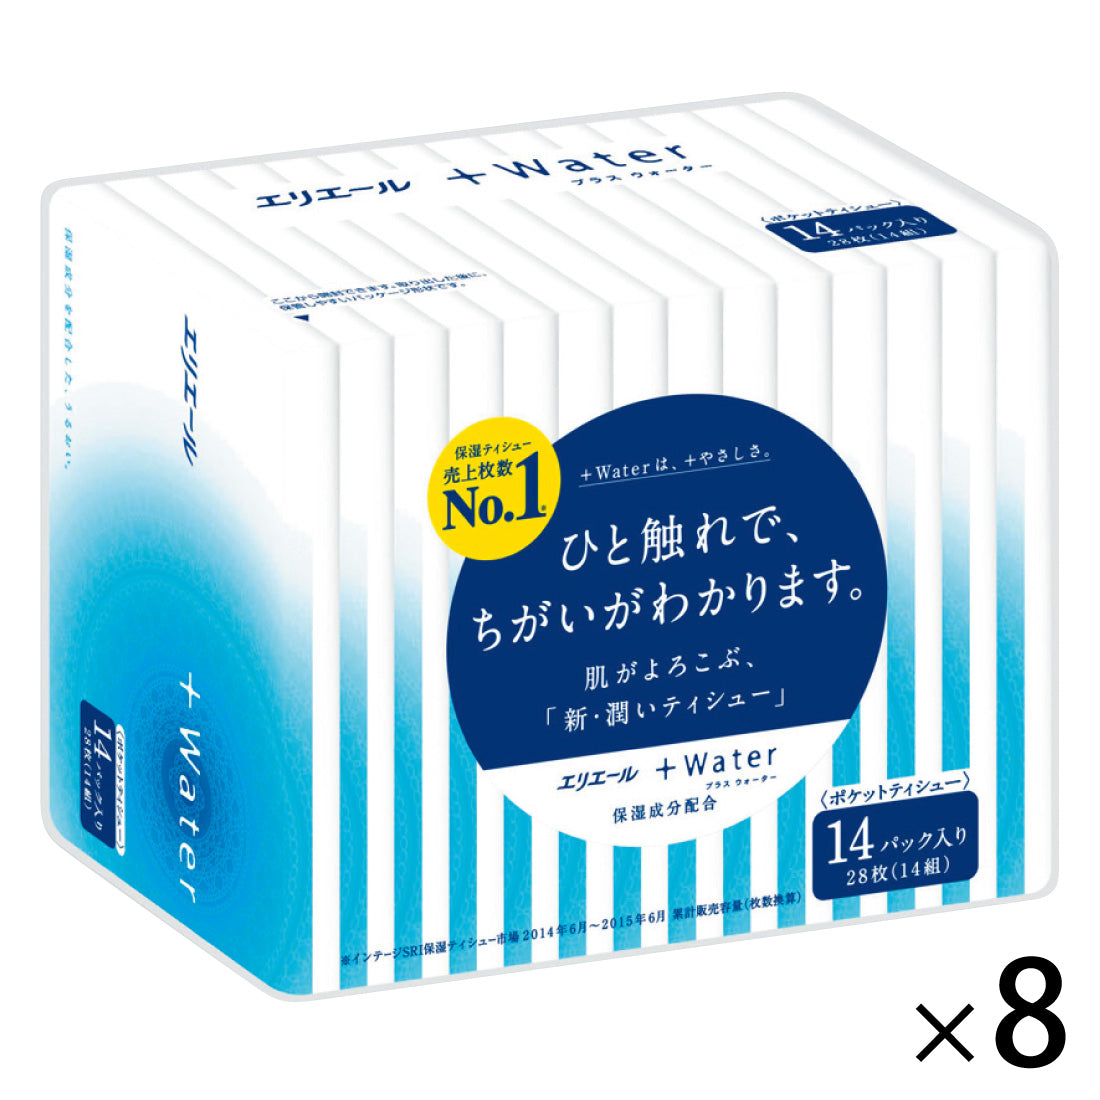 再×14入荷 【新品】ナチュラ 28パックセット!! エリエール - 救急/衛生用品